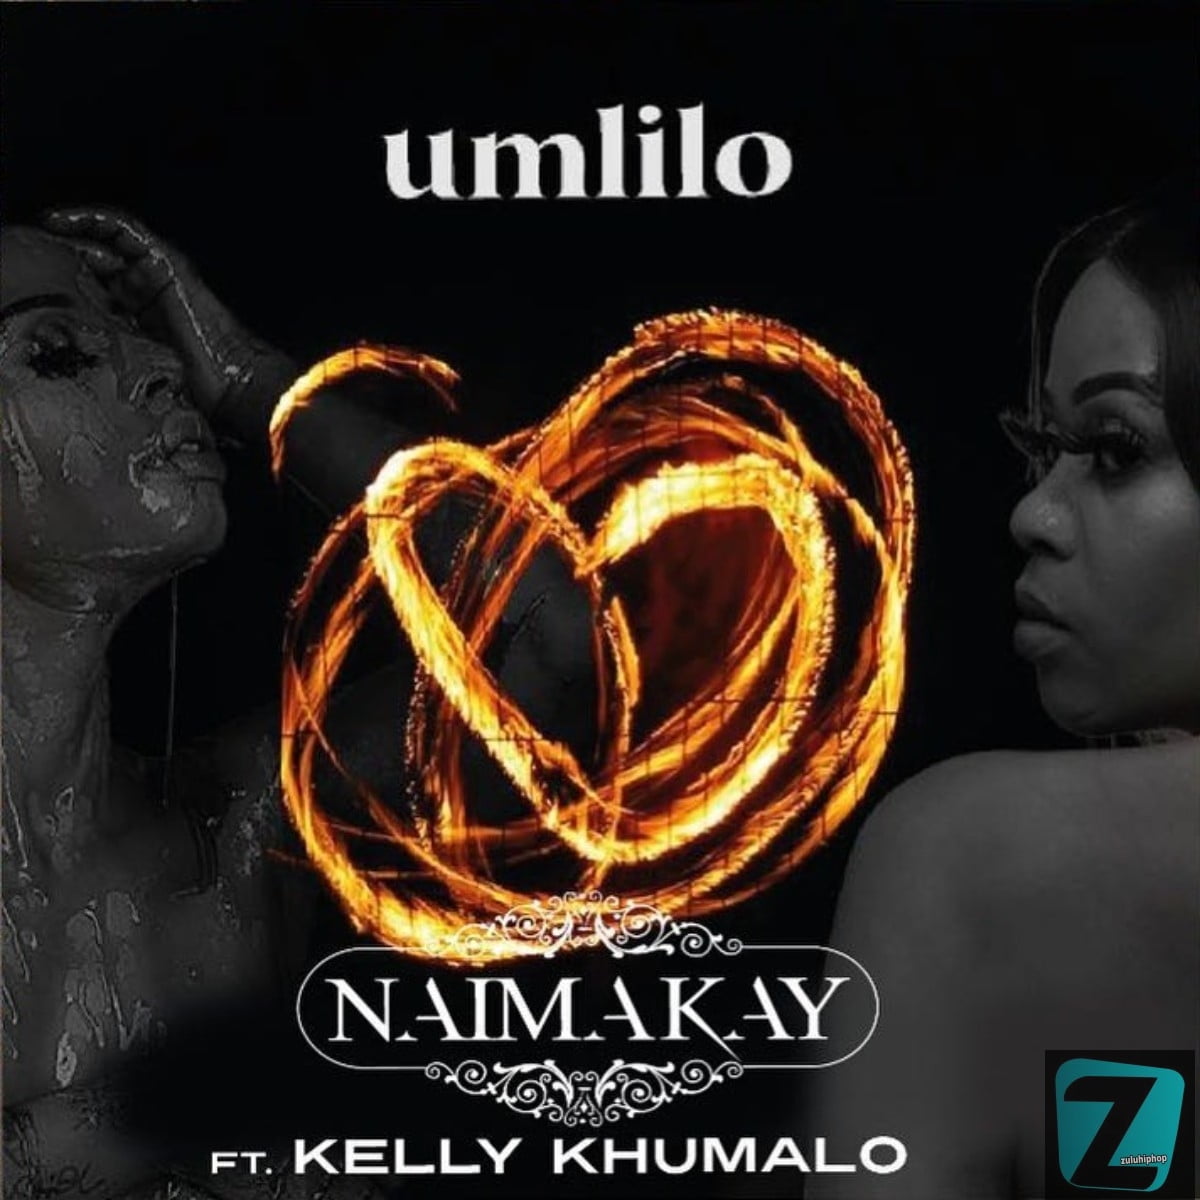 Naima Kay Ft. Kelly Khumalo – Umlilo